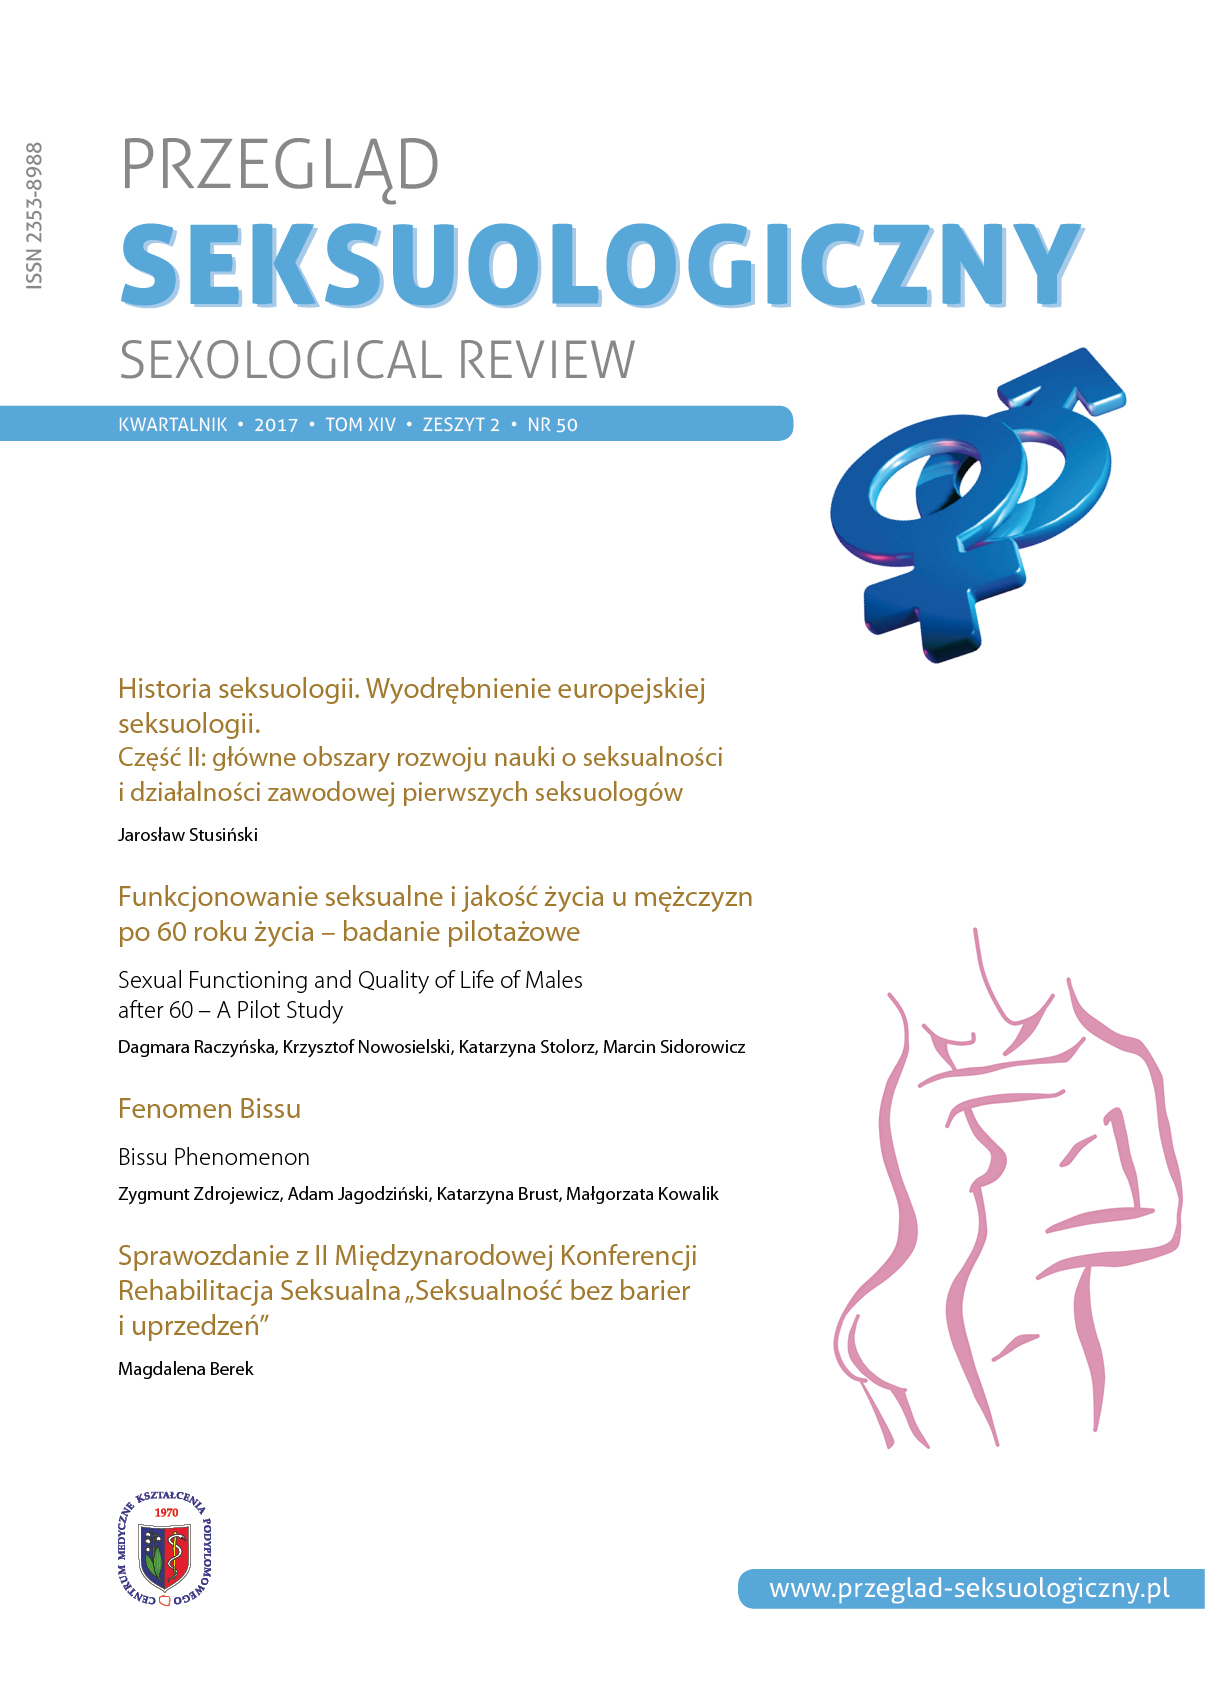 Sprawozdanie z II międzynarodowej konferencji: Rehabilitacja Seksualna „Seksualność bez barier i uprzedzeń”. Cover Image